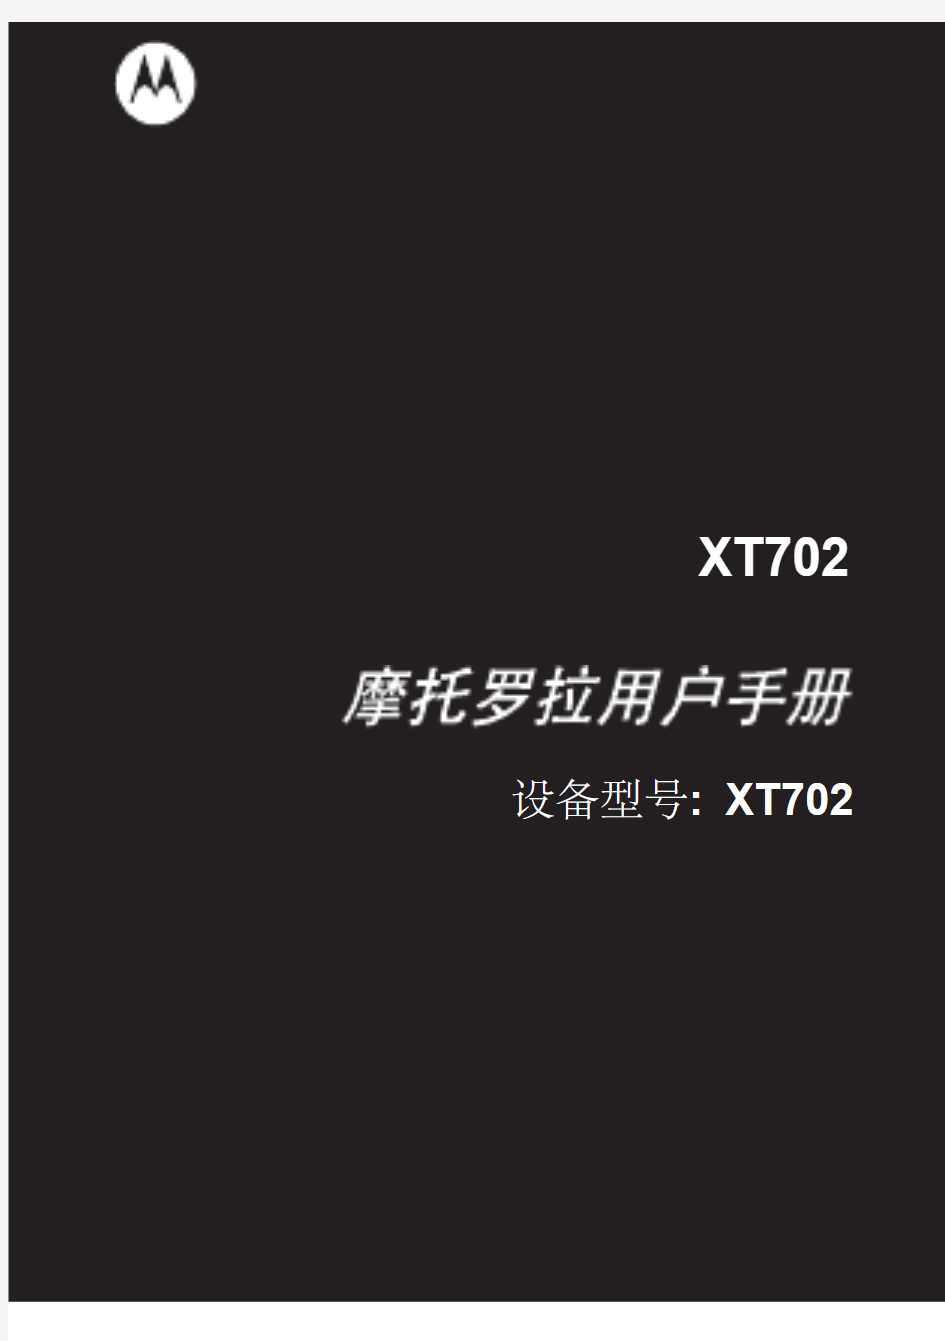 XT702简体中文说明书(milestone大陆版)